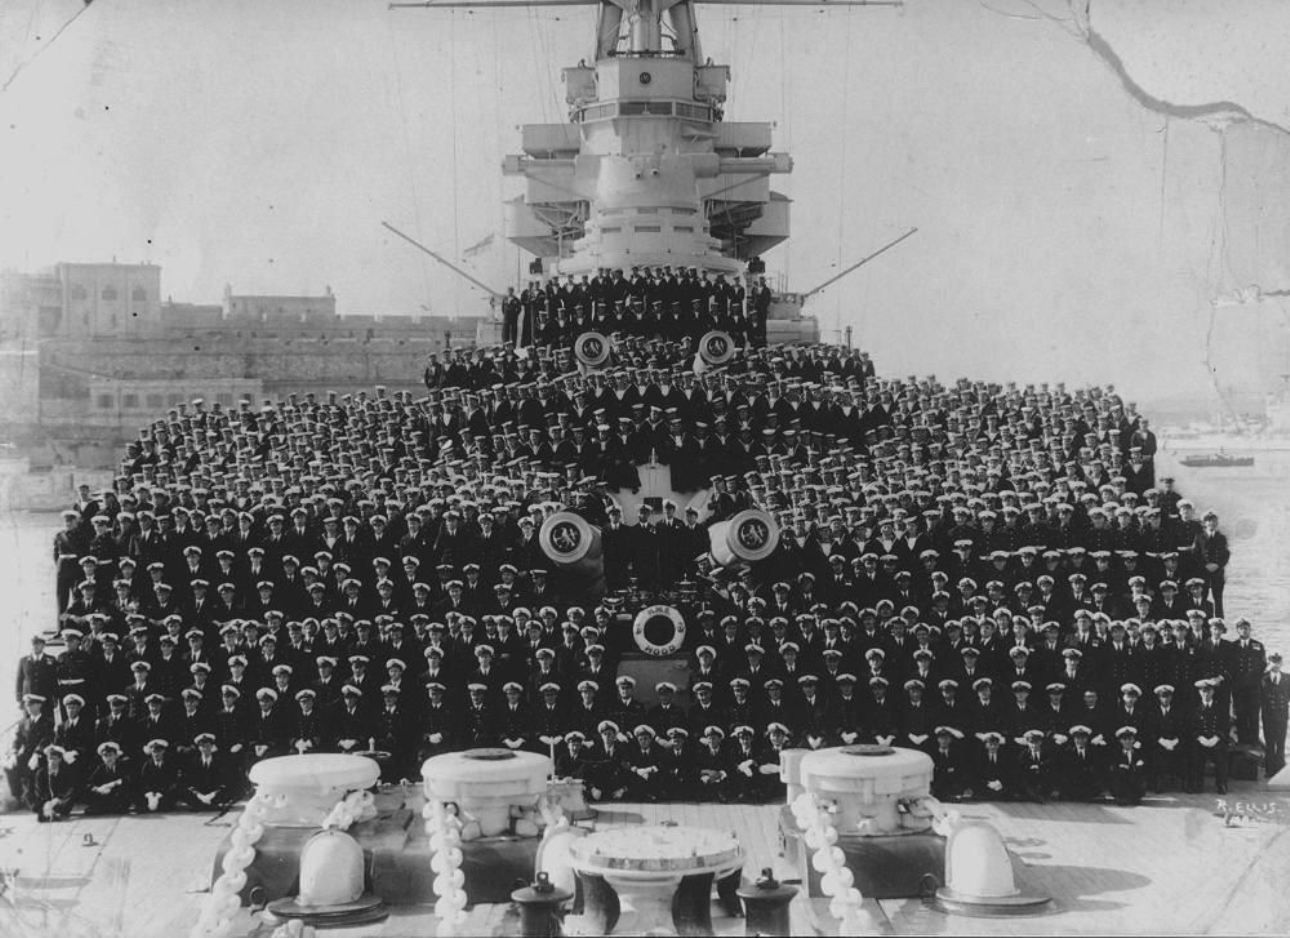 Групповая фотография команды британского линейного крейсера "Худ", 1941 г. После боя с "Бисмарком" из 1415 человек выживут лишь трое.